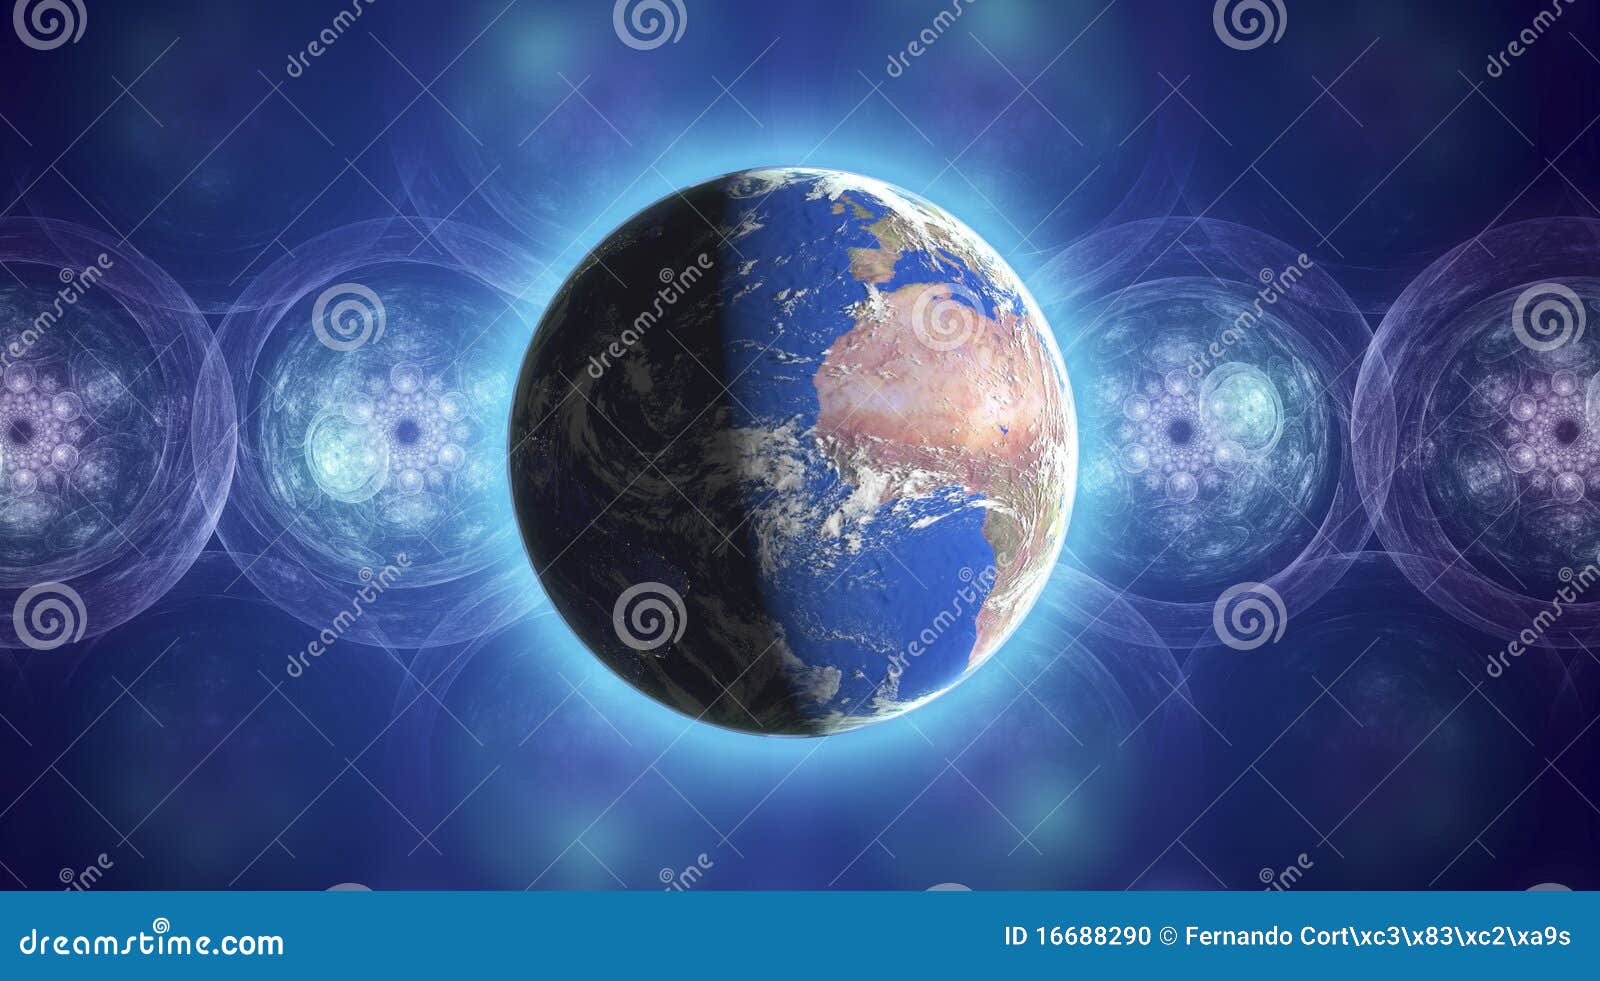 Planeta real da terra no espaço com efeitos coloridos